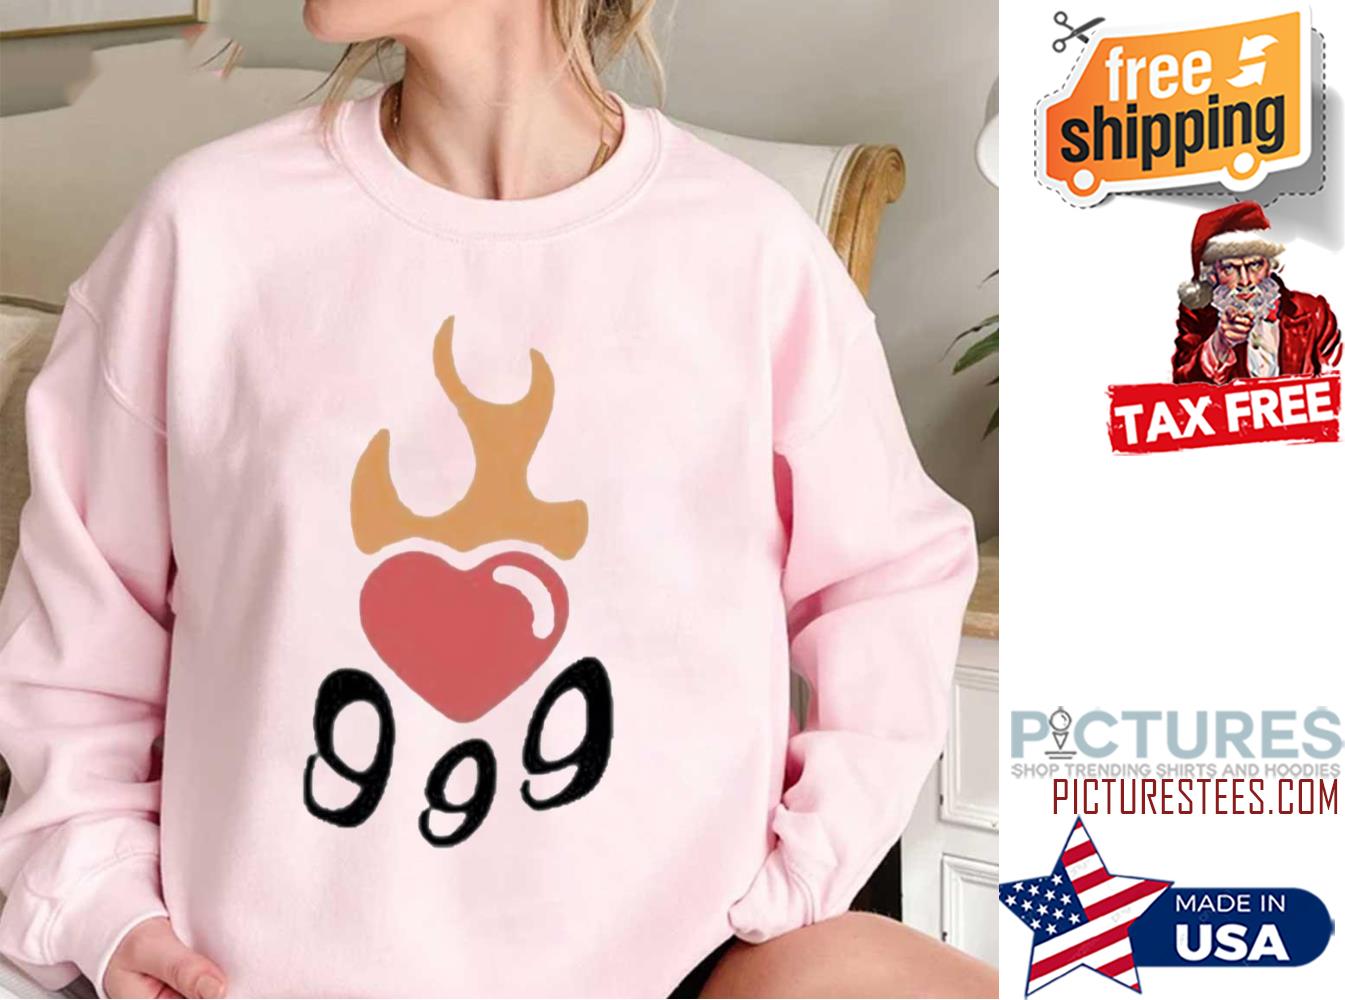 FREE shipping Juice Wrld Death 999 Burning Hearts Shirt, Unisex